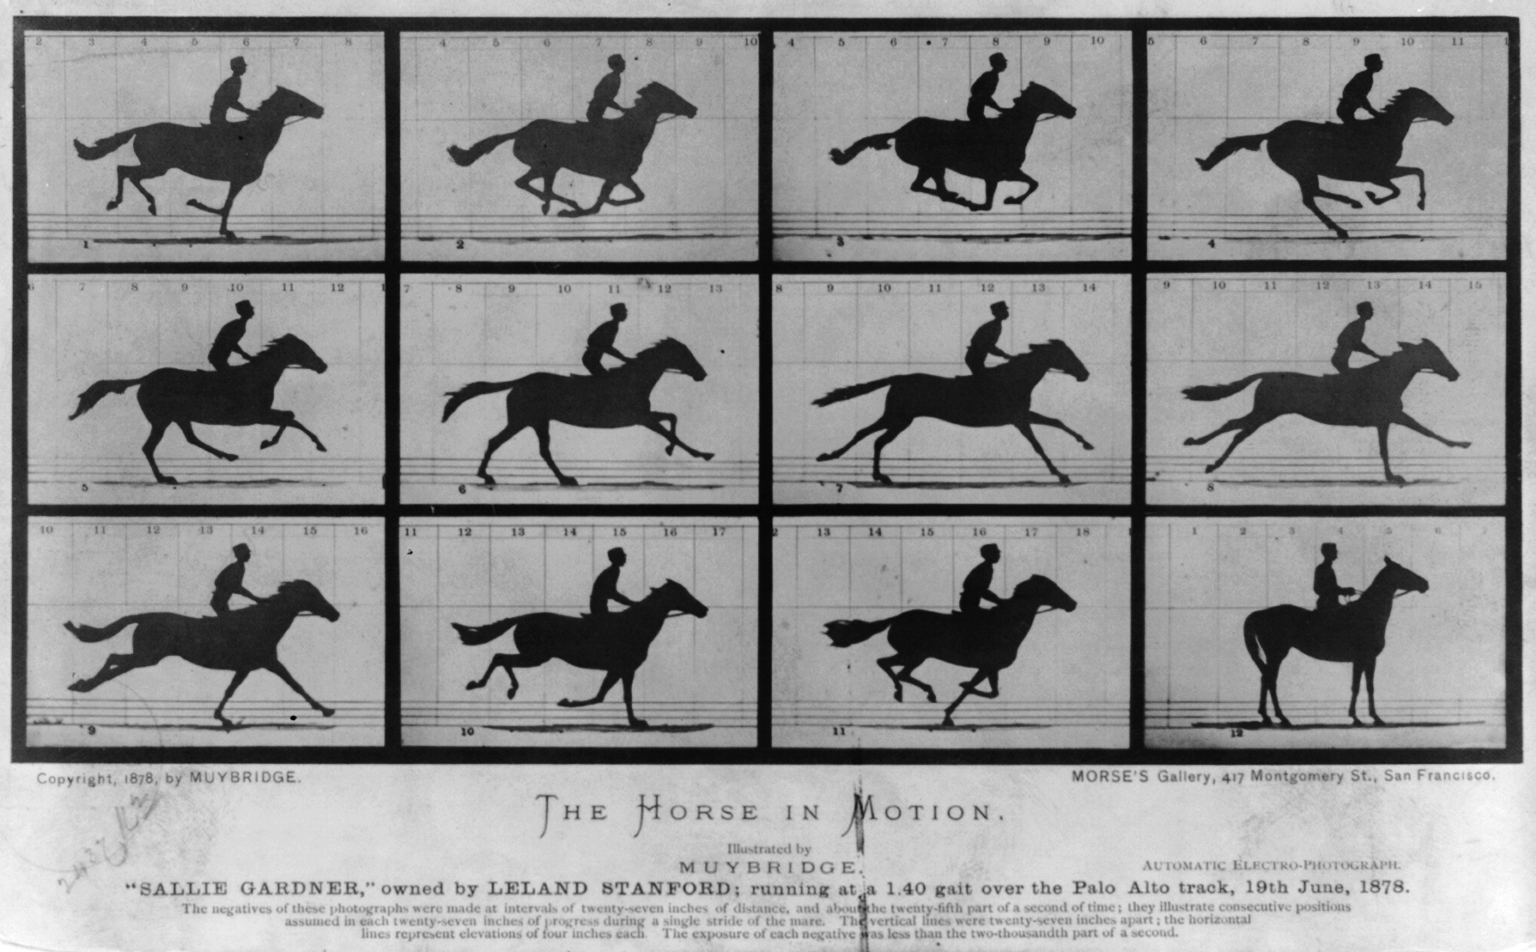 Το Άλογο σε Κίνηση. Η "Σάλι Γκαρντνερ", ιδιοκτησίας του Λίλαντ Στάνφορντ, τρέχει με ρυθμό 1:40 στην πίστα του Πάλο Άλτο, 19 Ιουνίου 1878 by Ίντγουιρντ Μάιμπριτζ - 1878 - - 